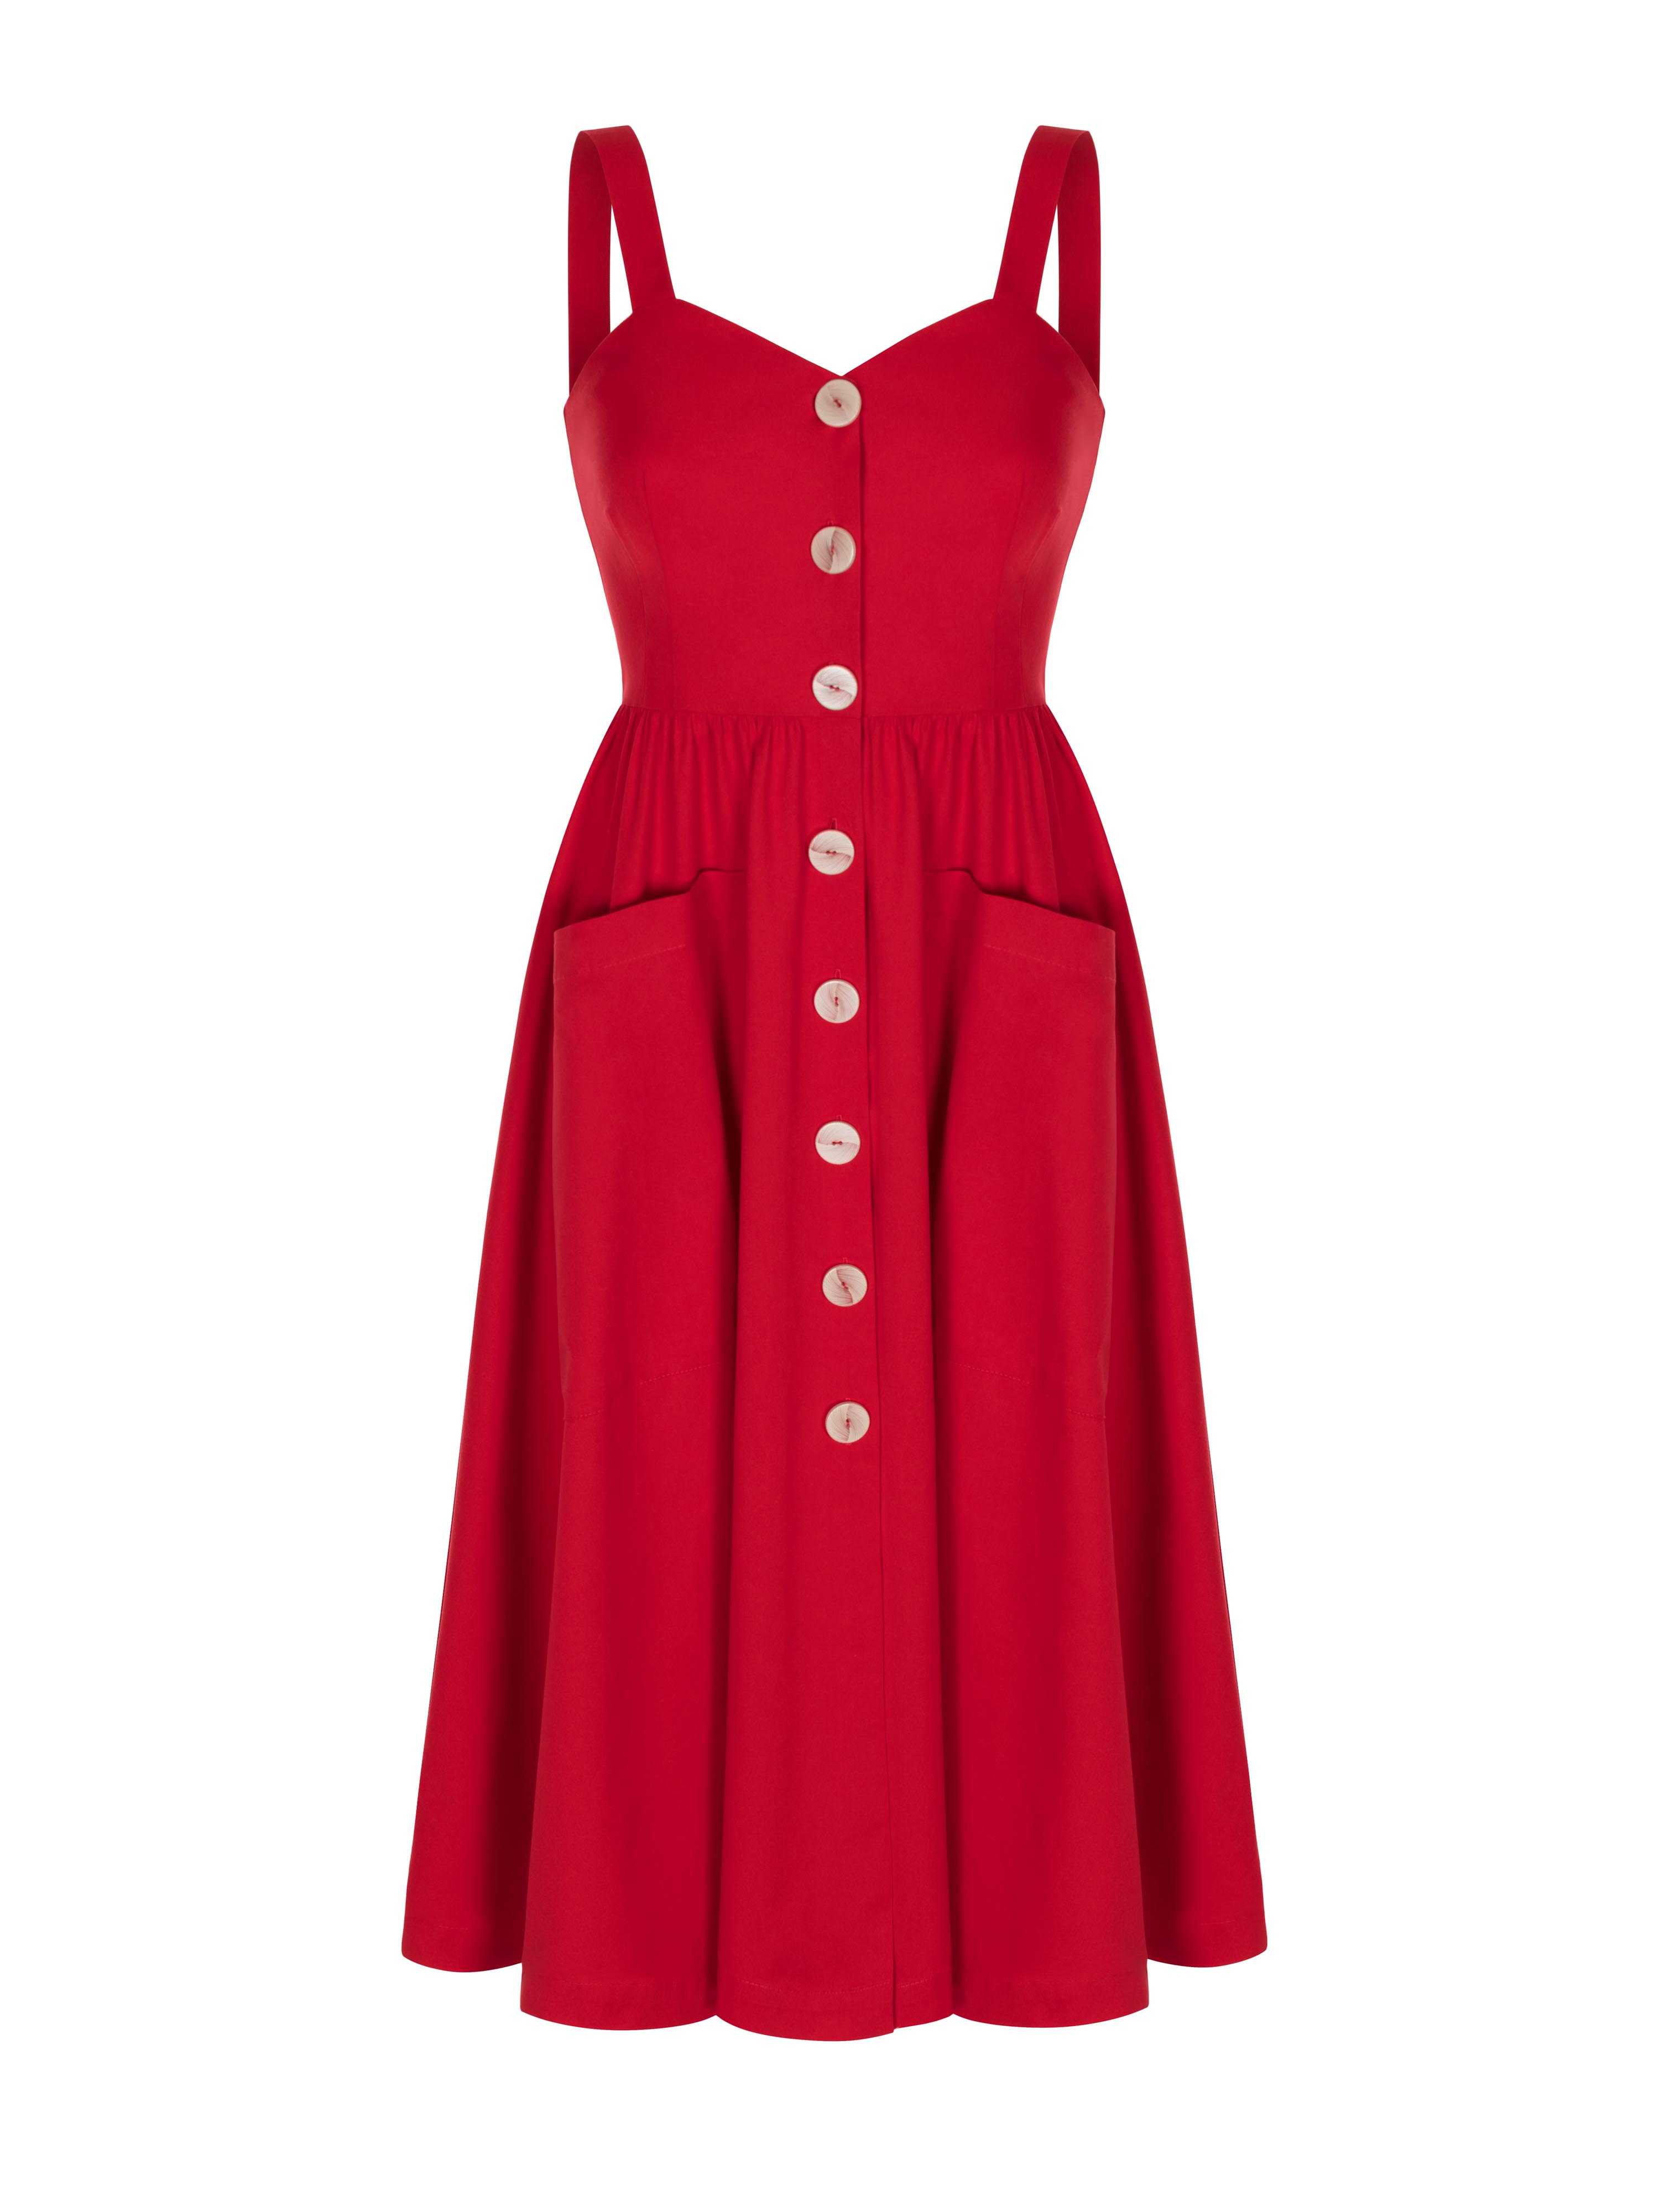 DARIA RED DRESS